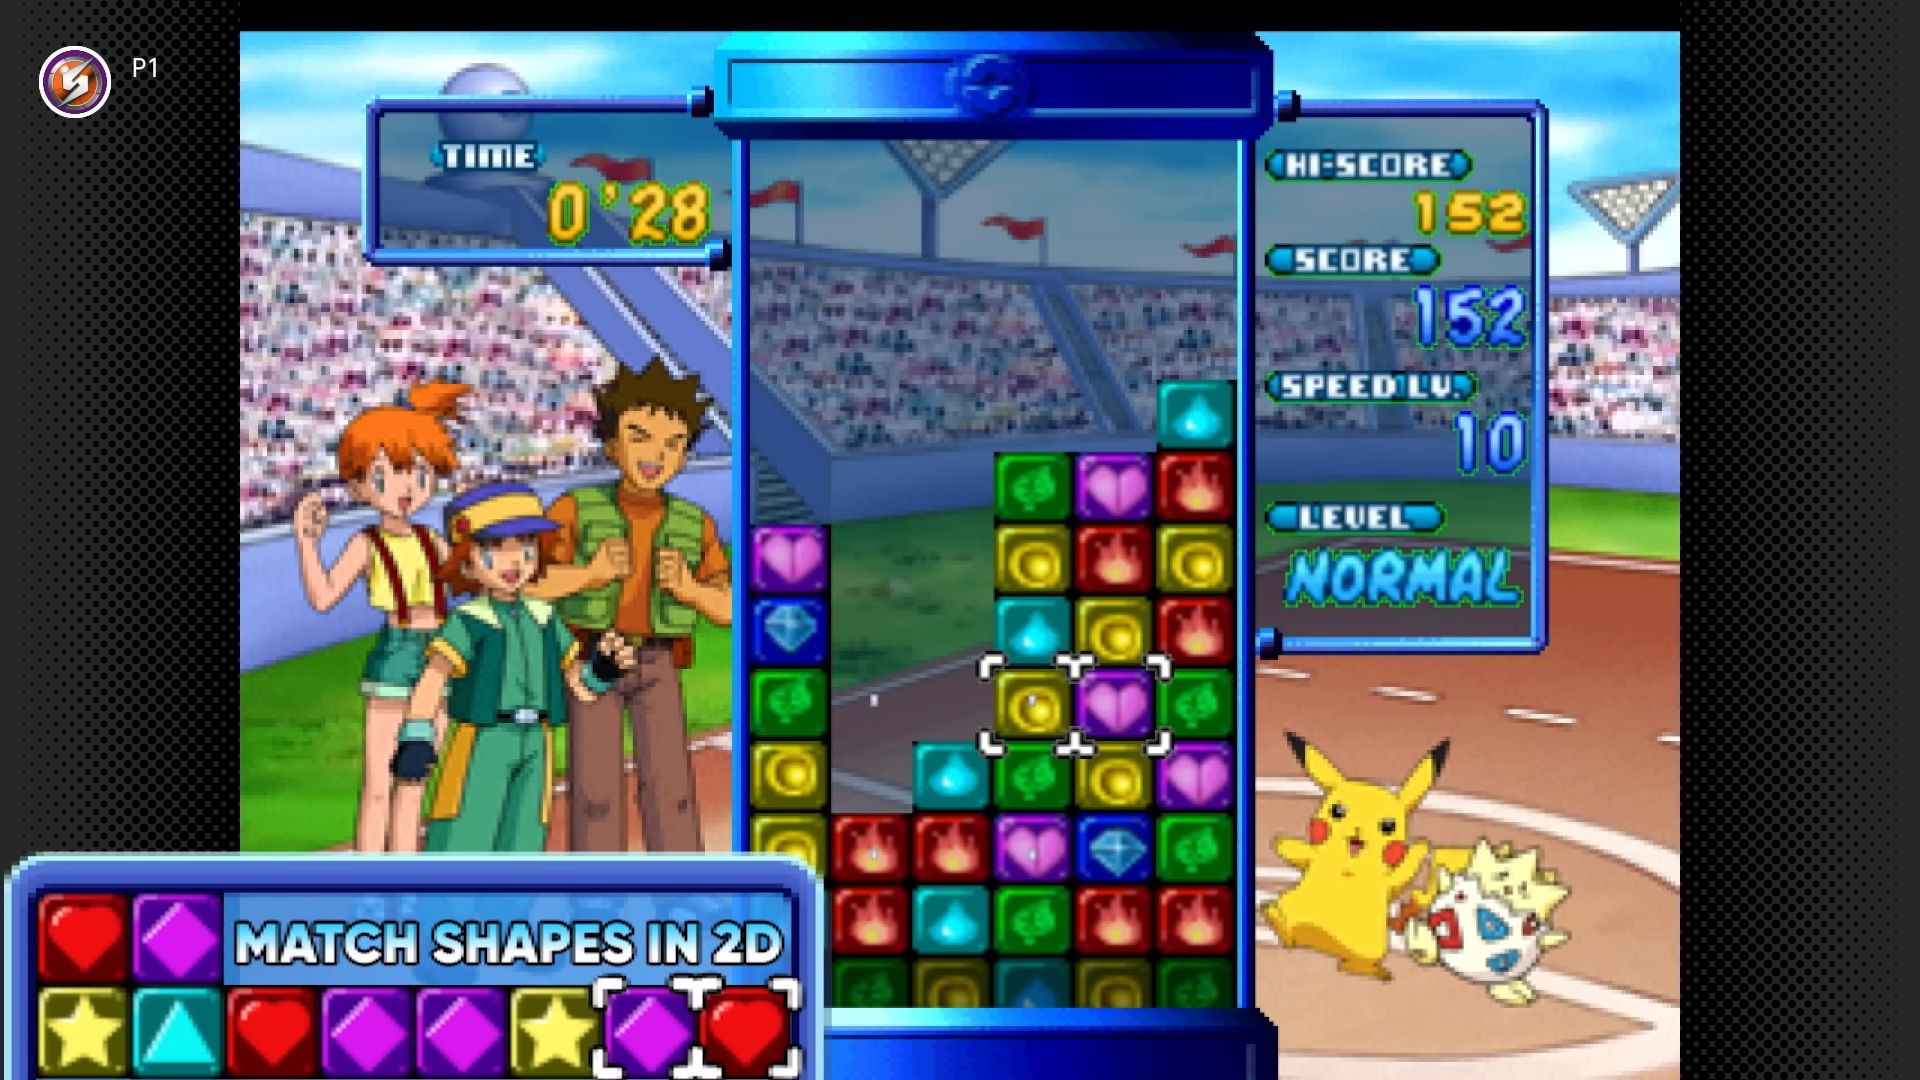 Pokémon Puzzle League é o próximo de jogo do N64 a chegar ao Switch Online  